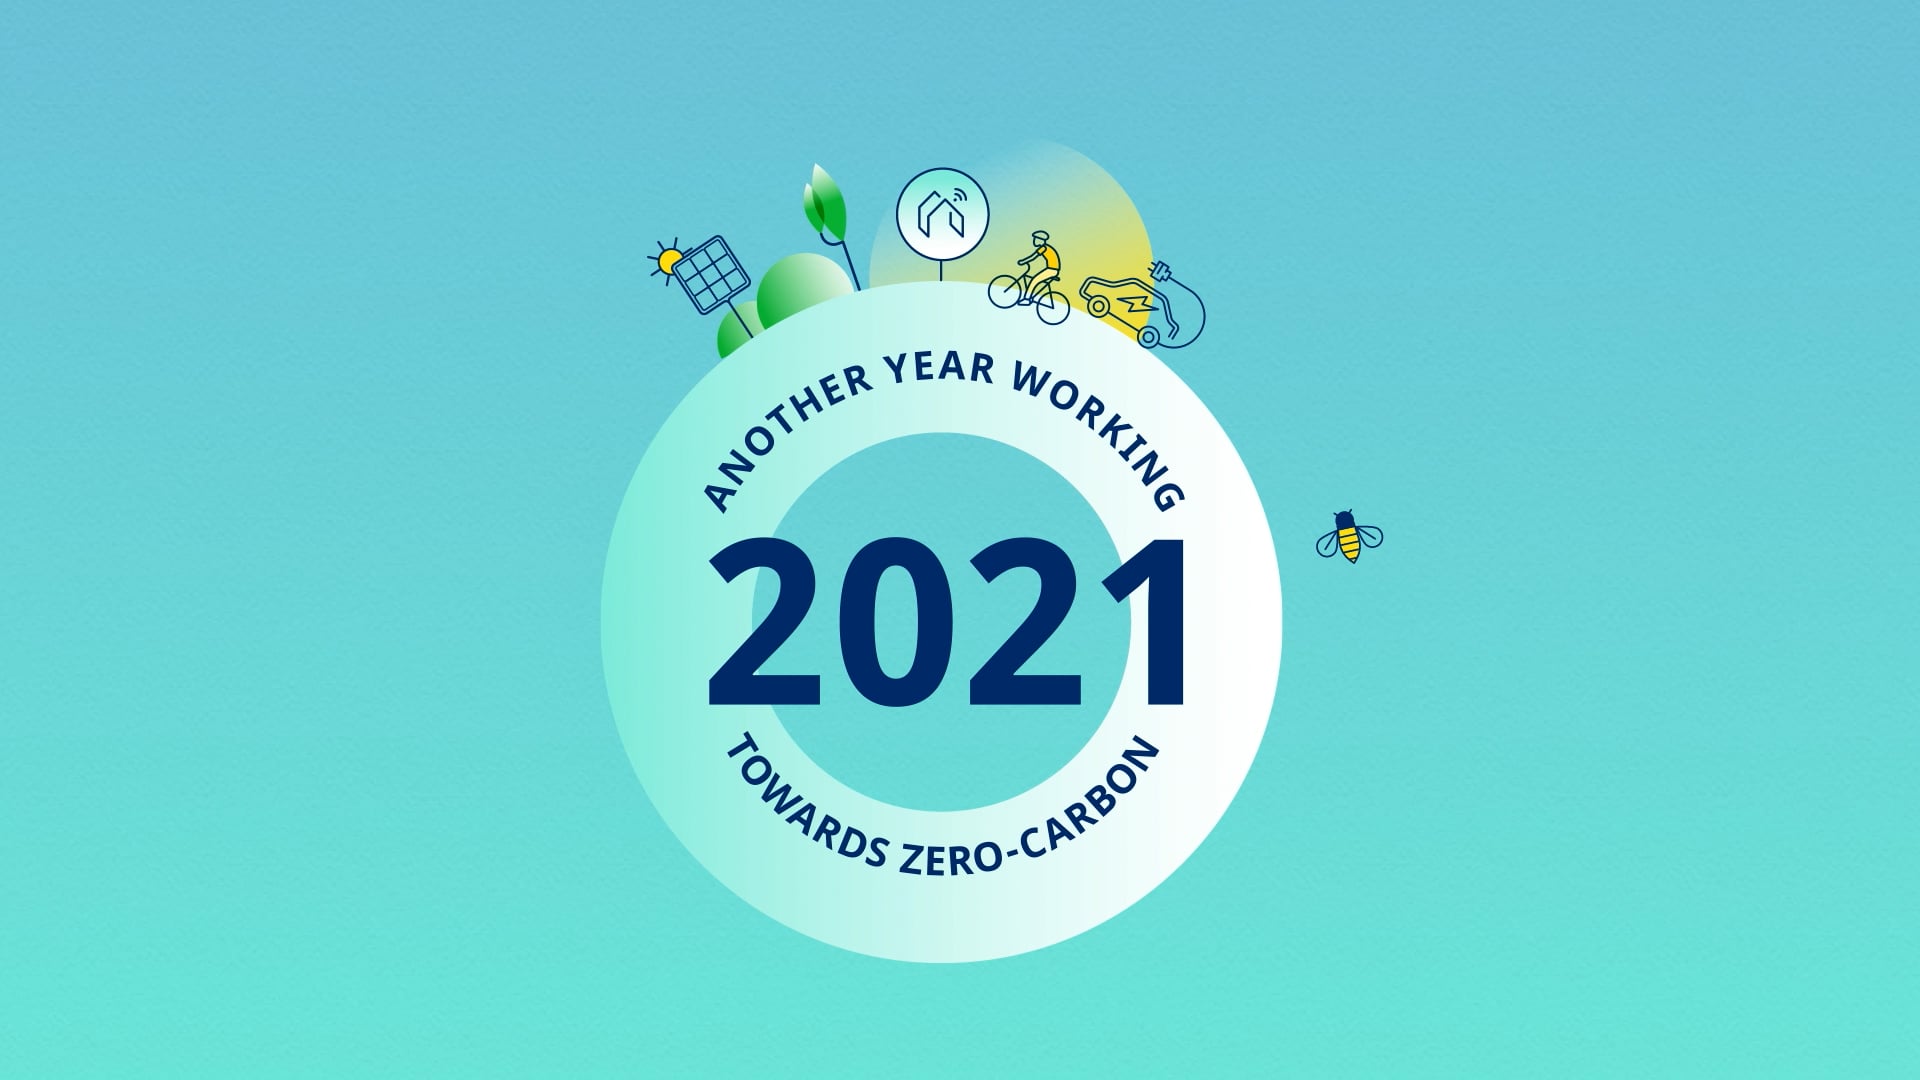 Inspiring a zero carbon future logo